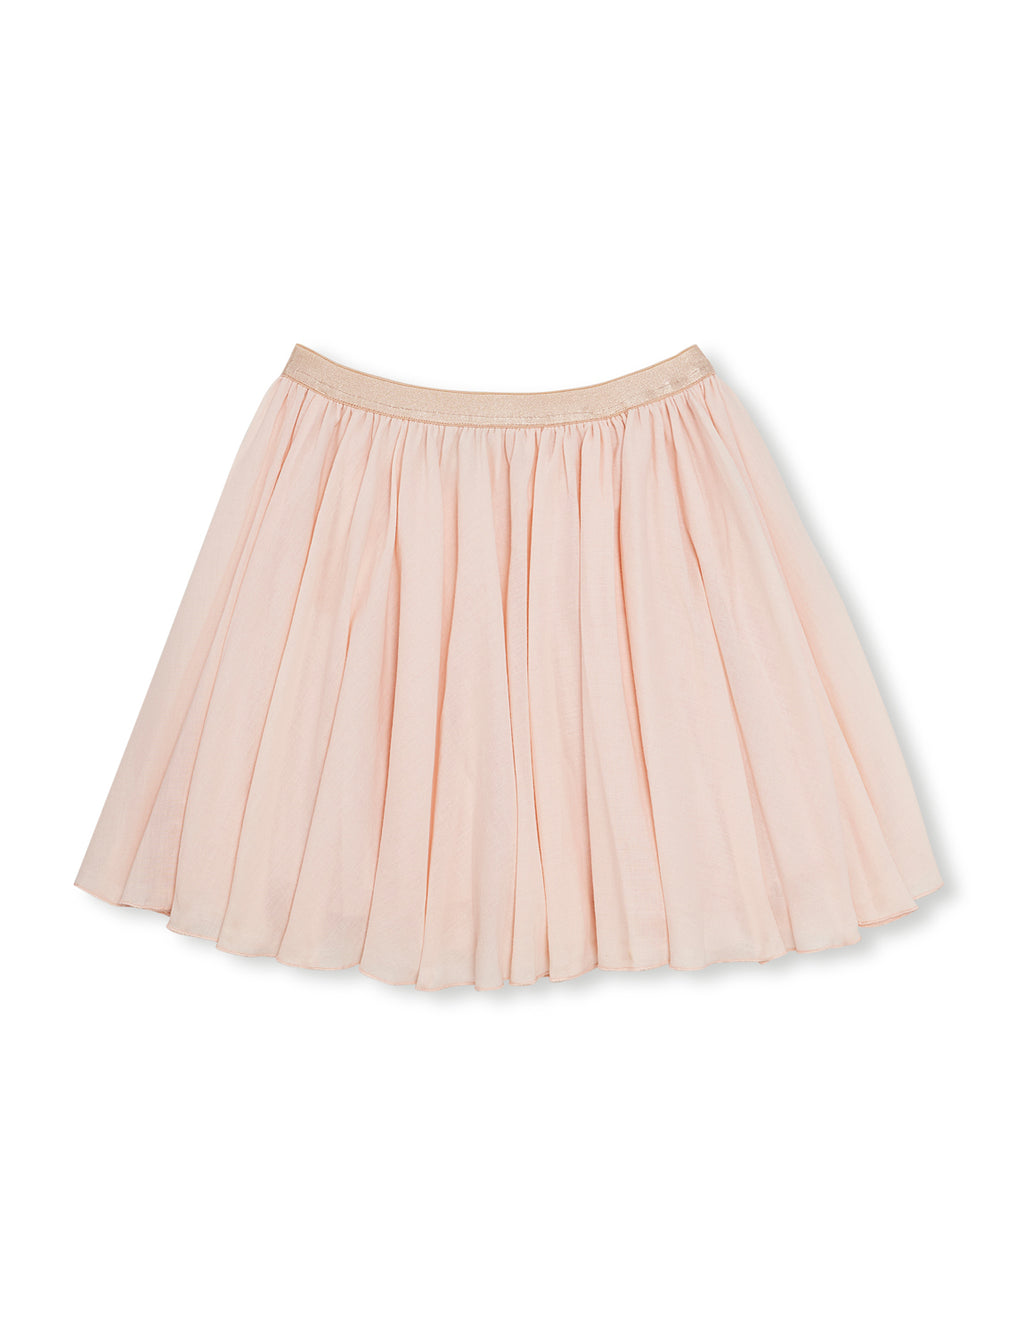 everyday tutu skirt for girls – HEDGE